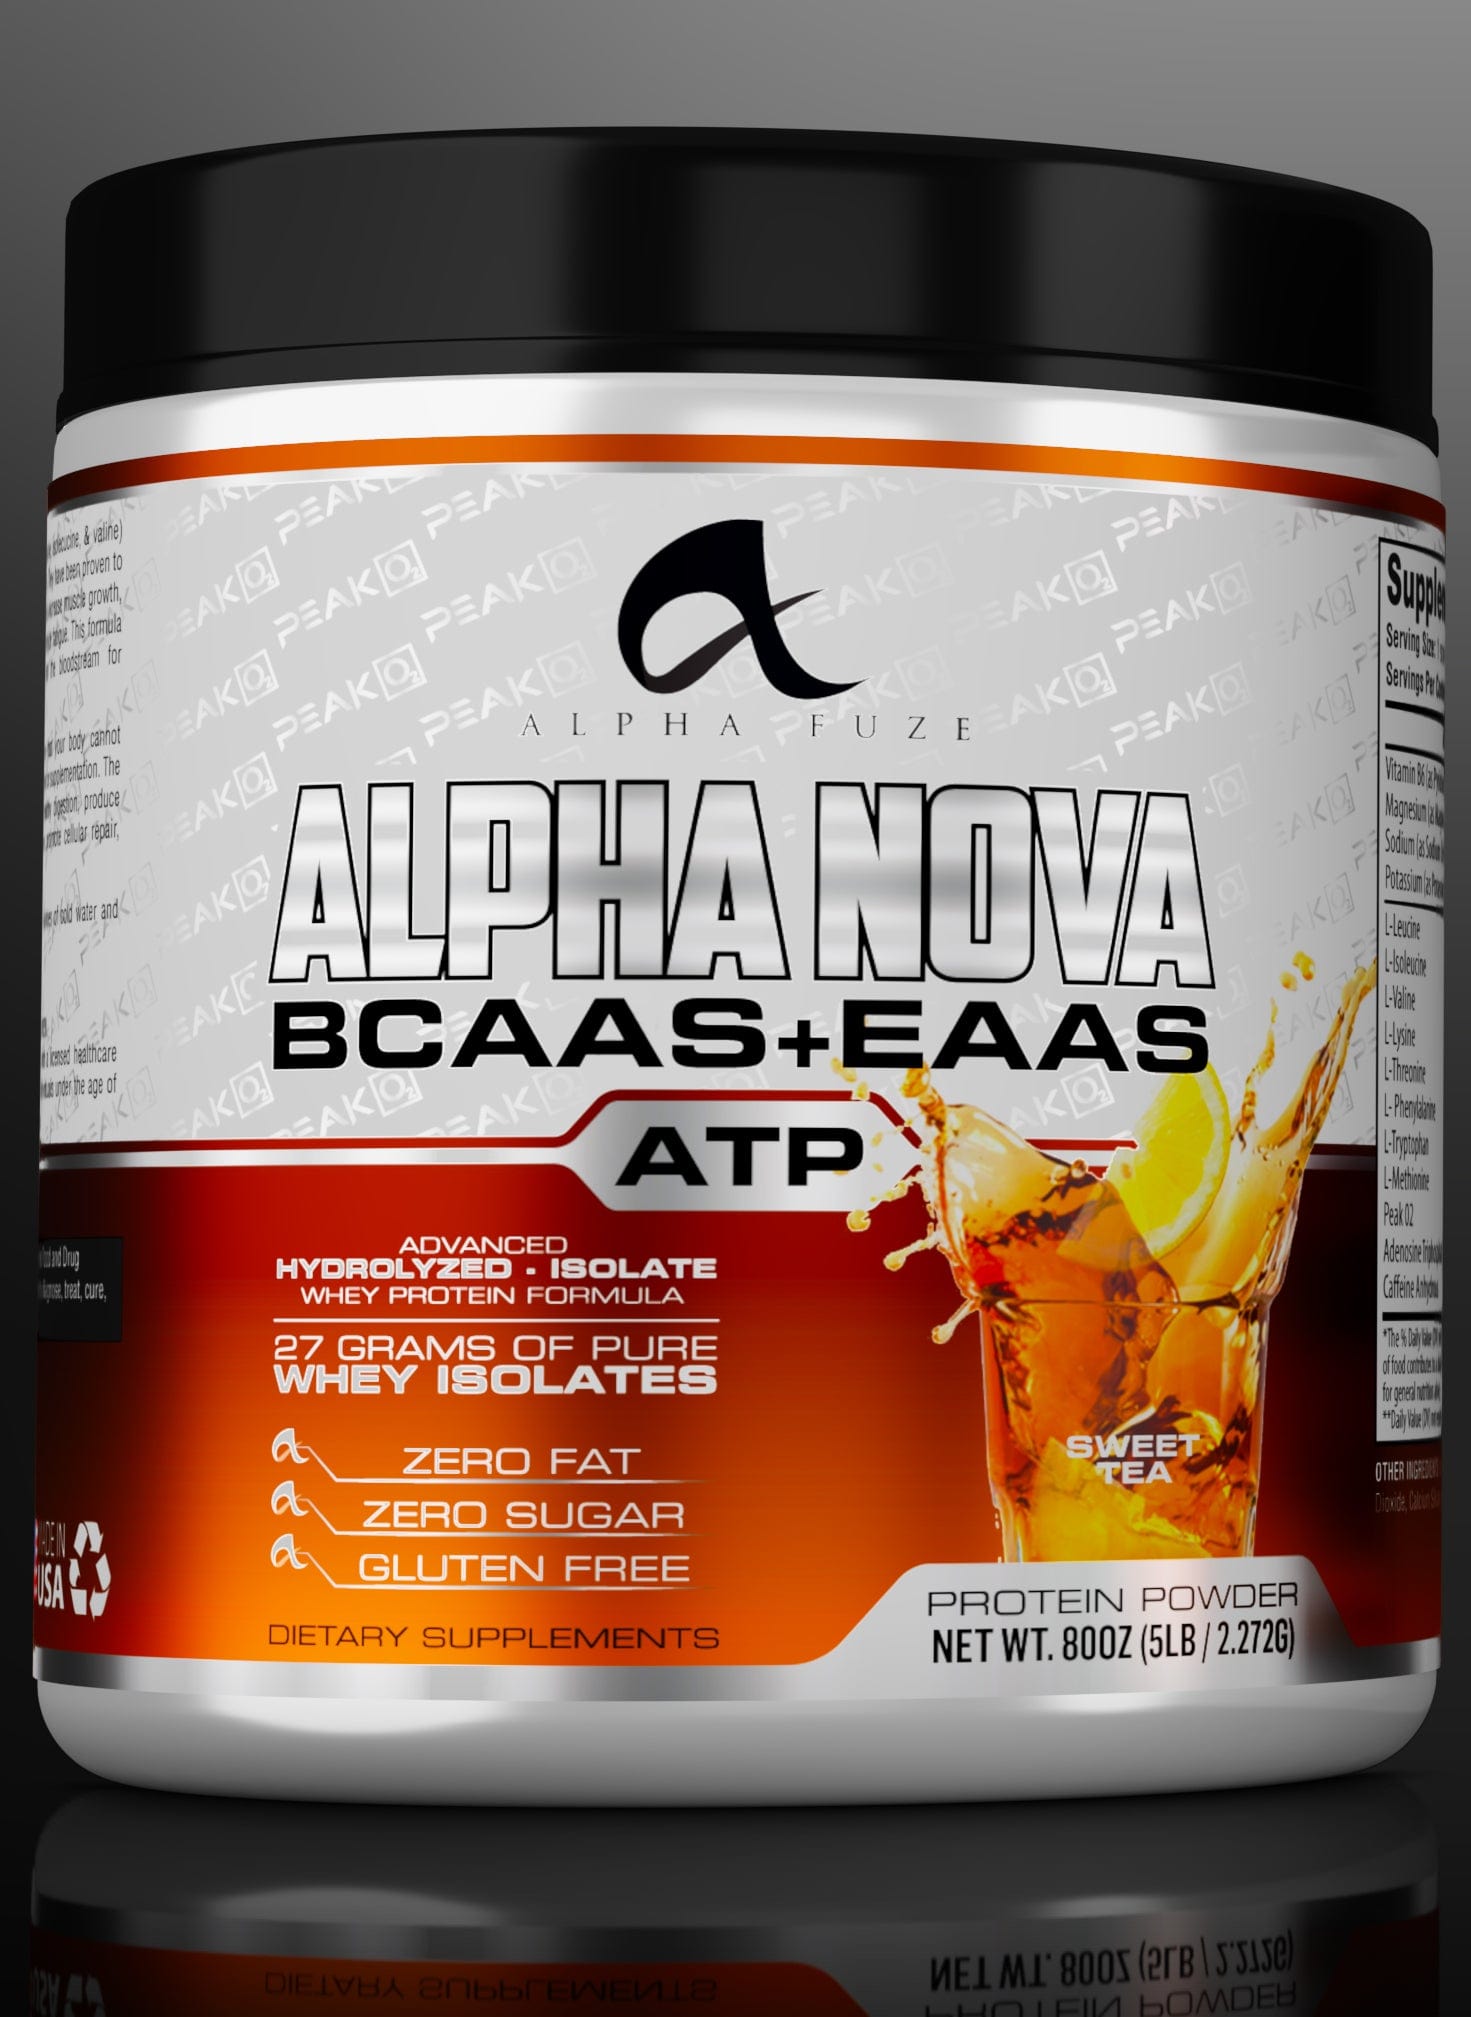 Alpha Fuze Health & Beauty Alpha Nova (BCAAS+EAAS)